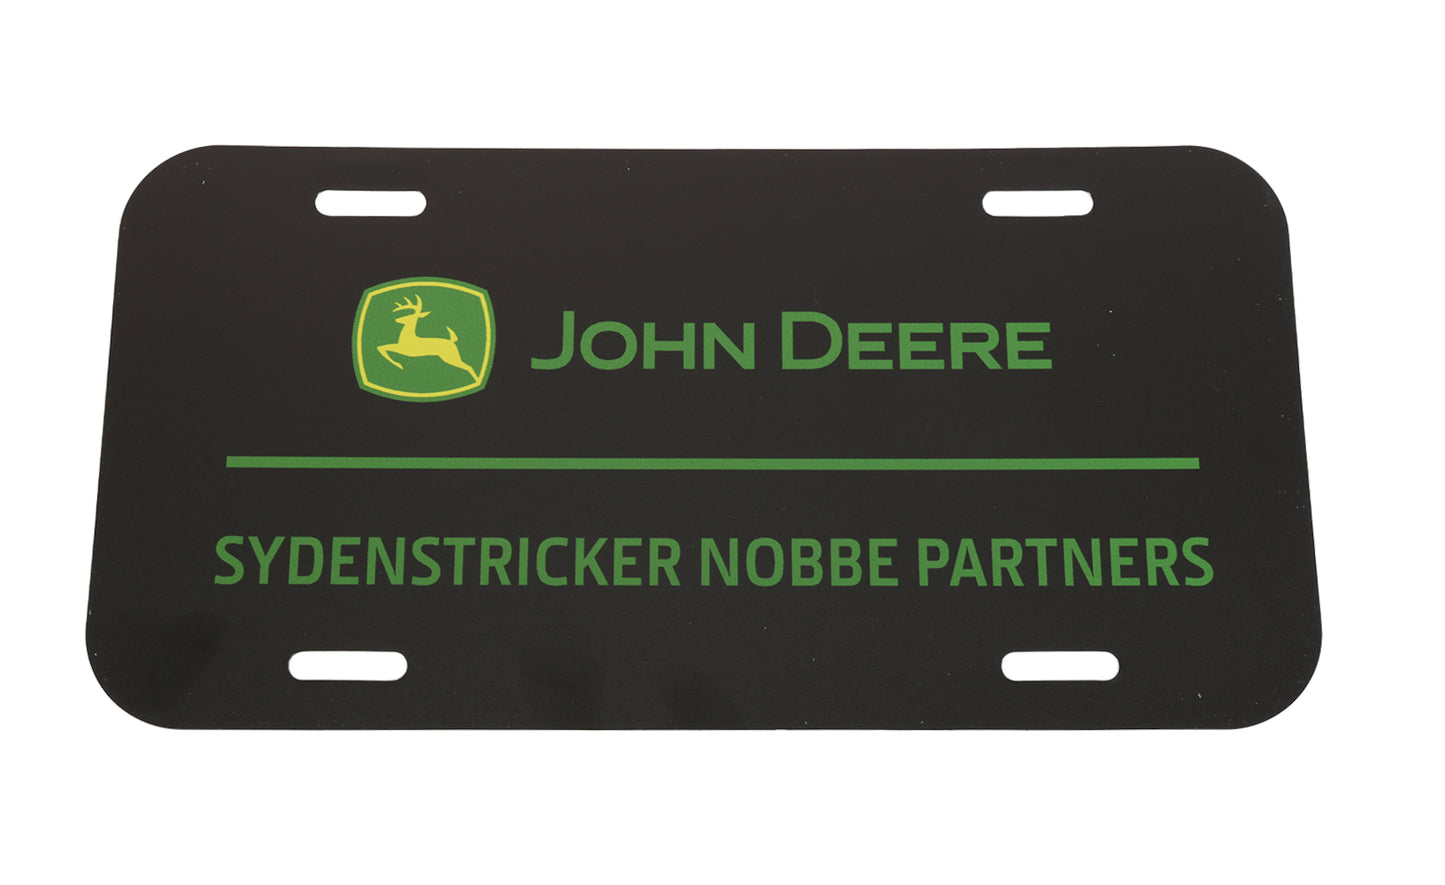 John Deere "Sydenstricker Nobbe Partners" License Plate - LP85908